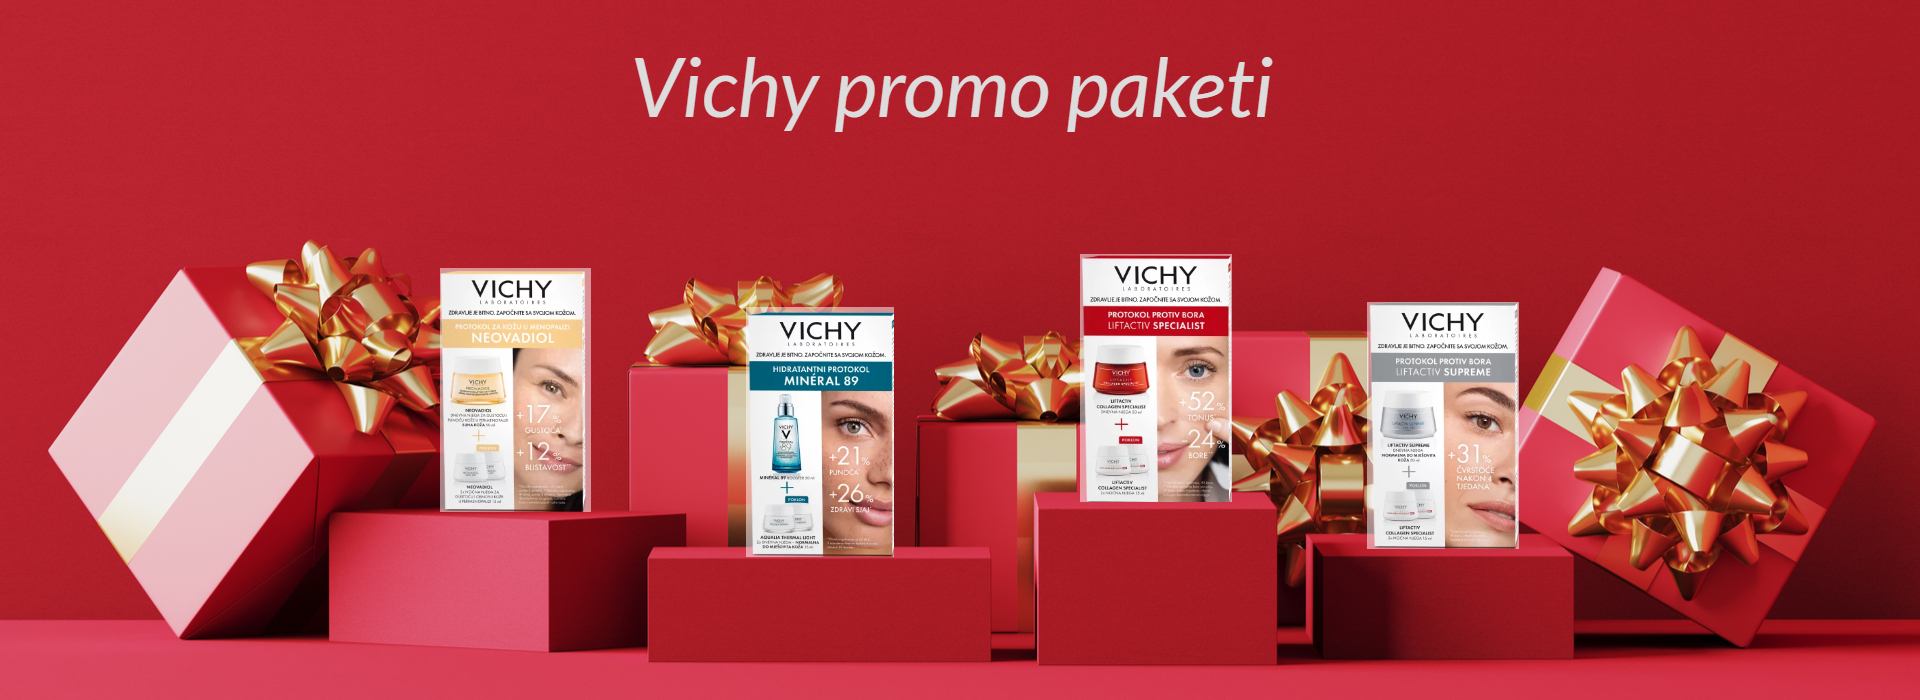 Vichy promo paketi